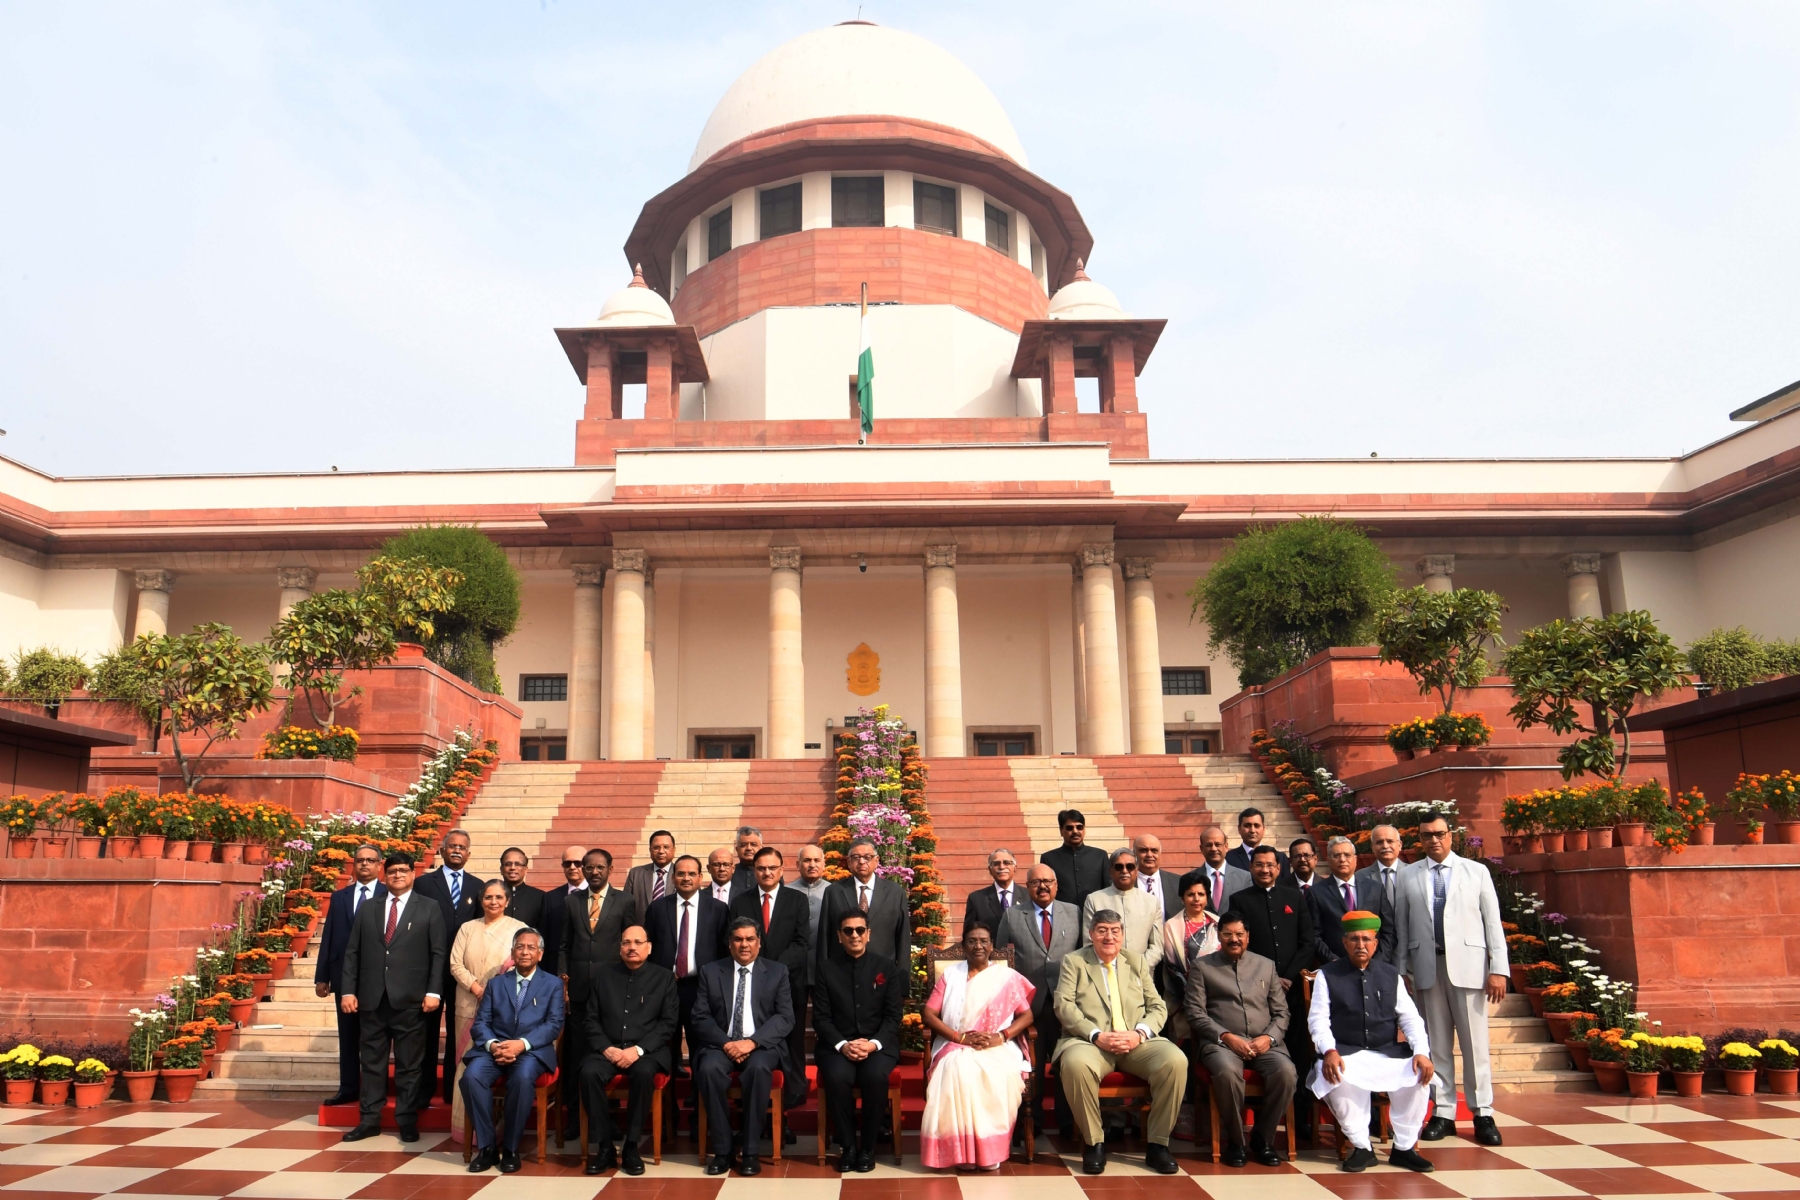 नई दिल्ली में राष्ट्रपति श्रीमती द्रौपदी मुर्मू  और मुख्य न्यायाधीश जस्टिस डी वाई चंद्रचूड़ ने भारत के सर्वोच्च न्यायालय द्वारा आयोजित संविधान दिवस समारोह में भागलिया और लोगों को संबोधित किया।